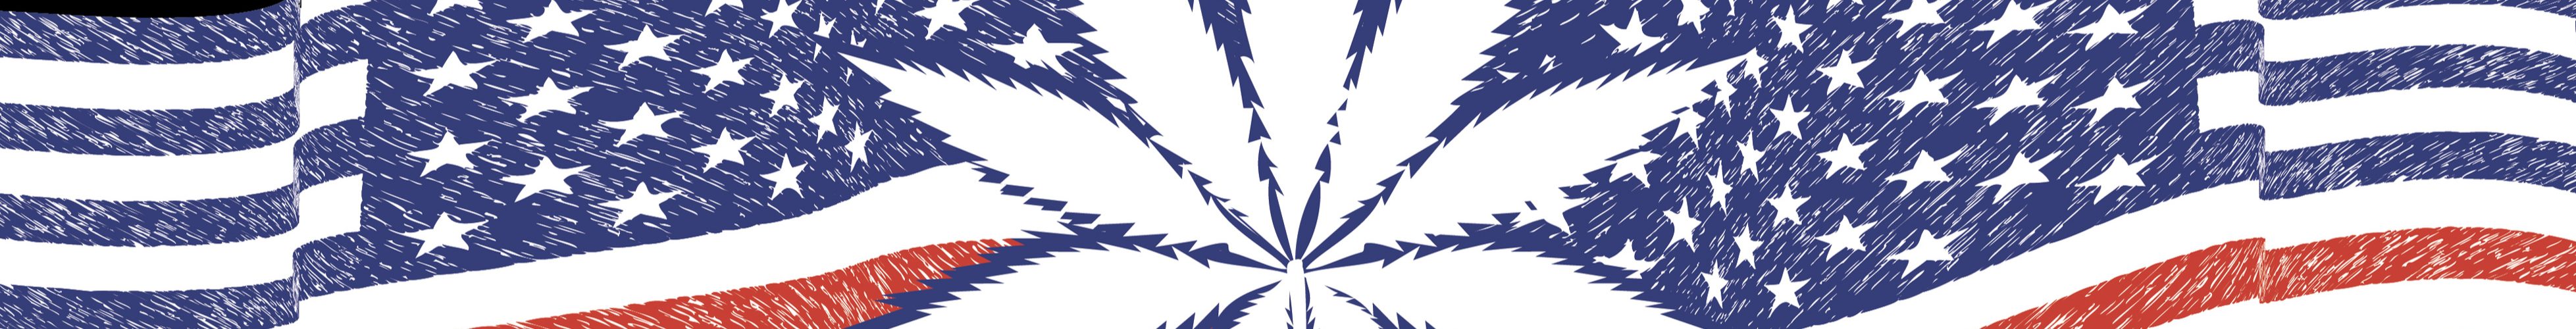 legal marijuana personal sovereignty